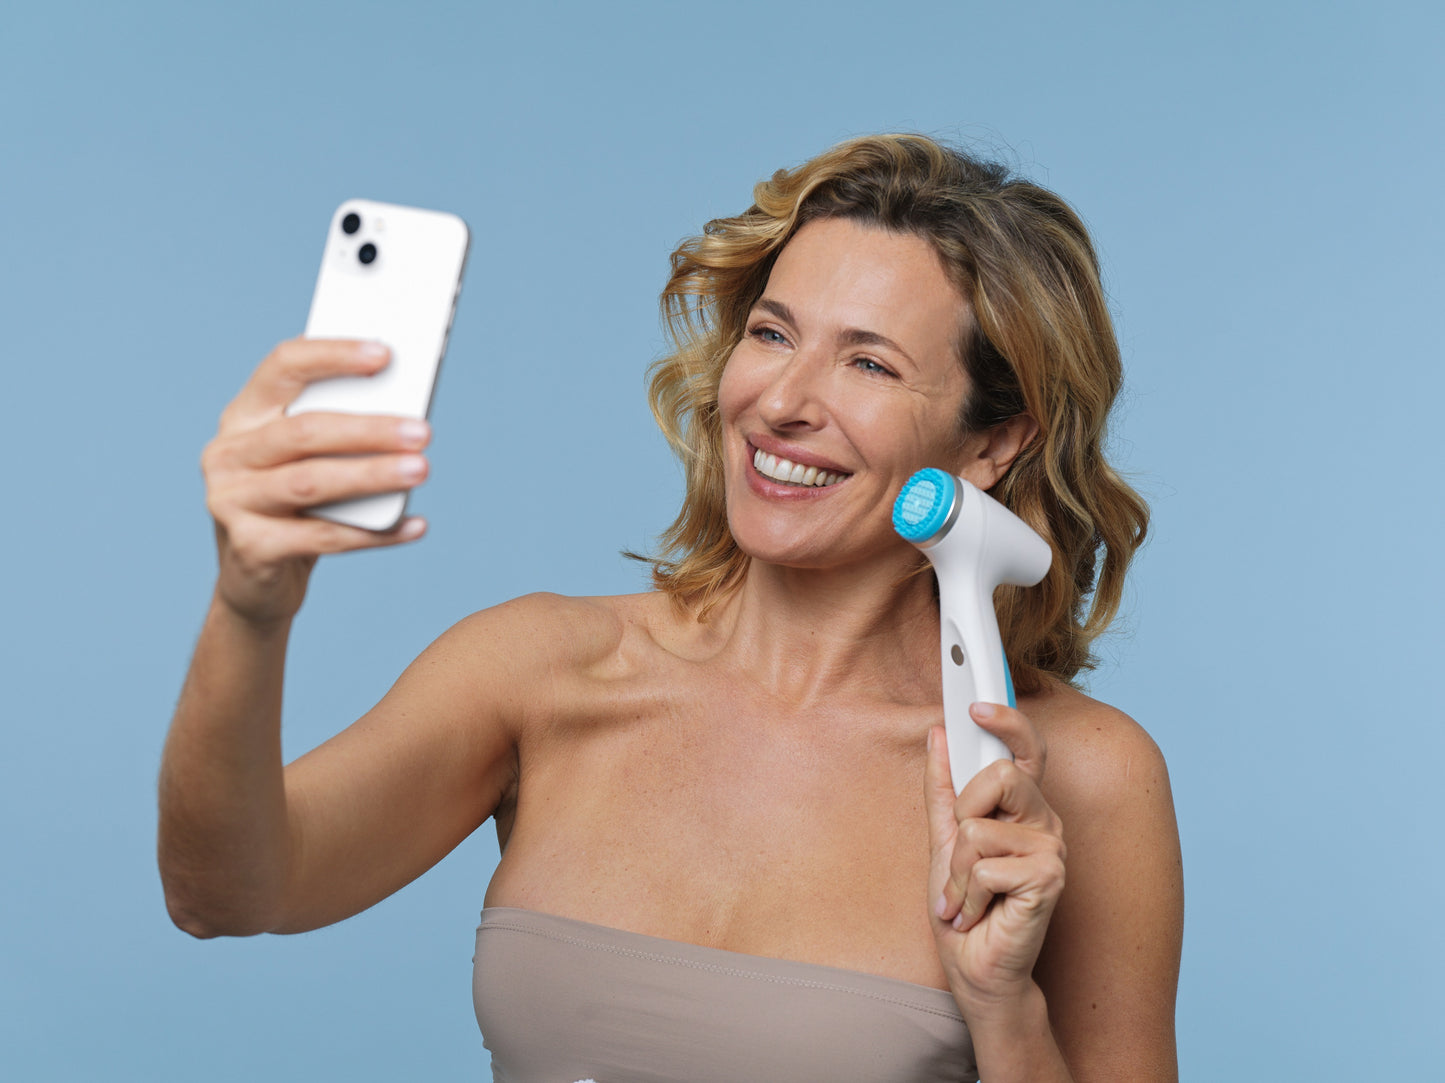 El cliente tiene LumiSpa iO y teléfono móvil - LumiSpa iO puede utilizar Blutetooth con el Nu Skin aplicación Vera en su teléfono móvil para ayudarle a alcanzar sus objetivos de cuidado de la piel con un sistema inteligente. IoT-tecnología inteligente (Internet de las Cosas).